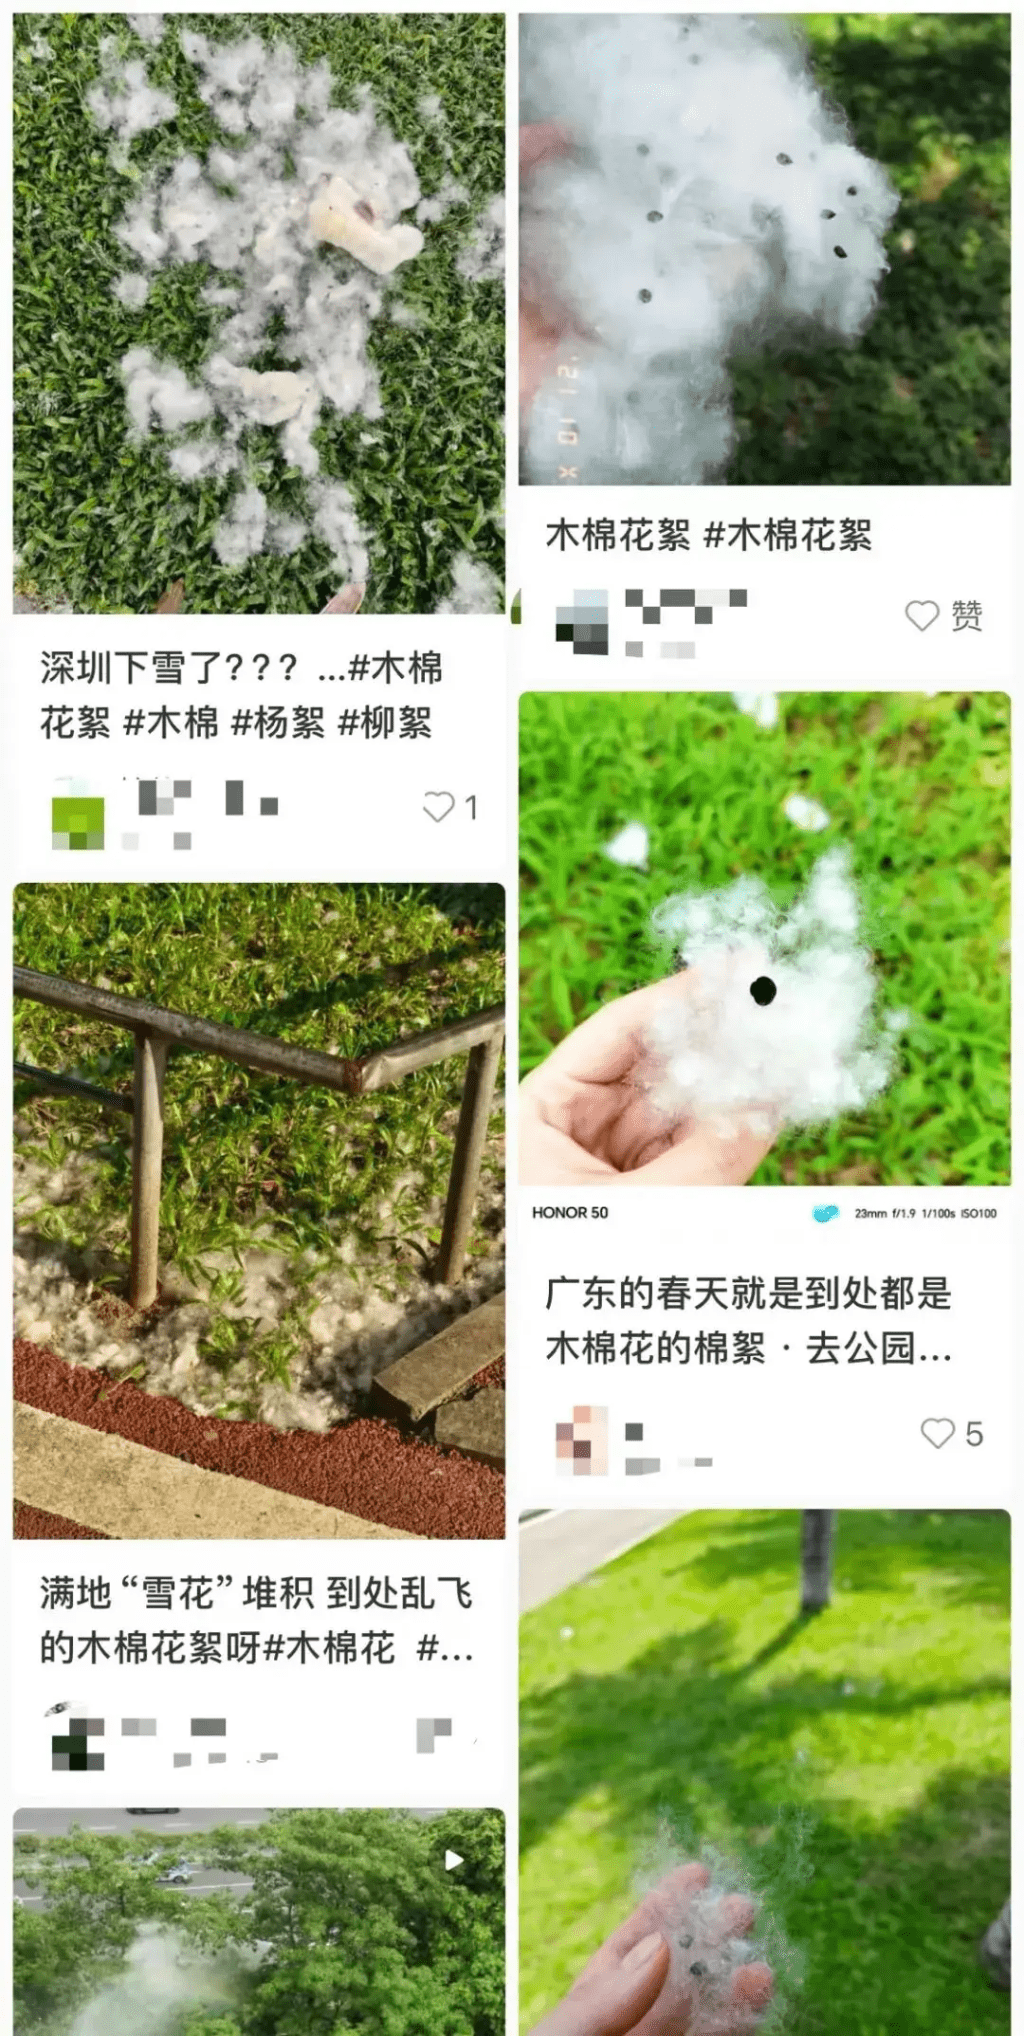 网上涌现大量深圳街头木棉飞絮的照片。